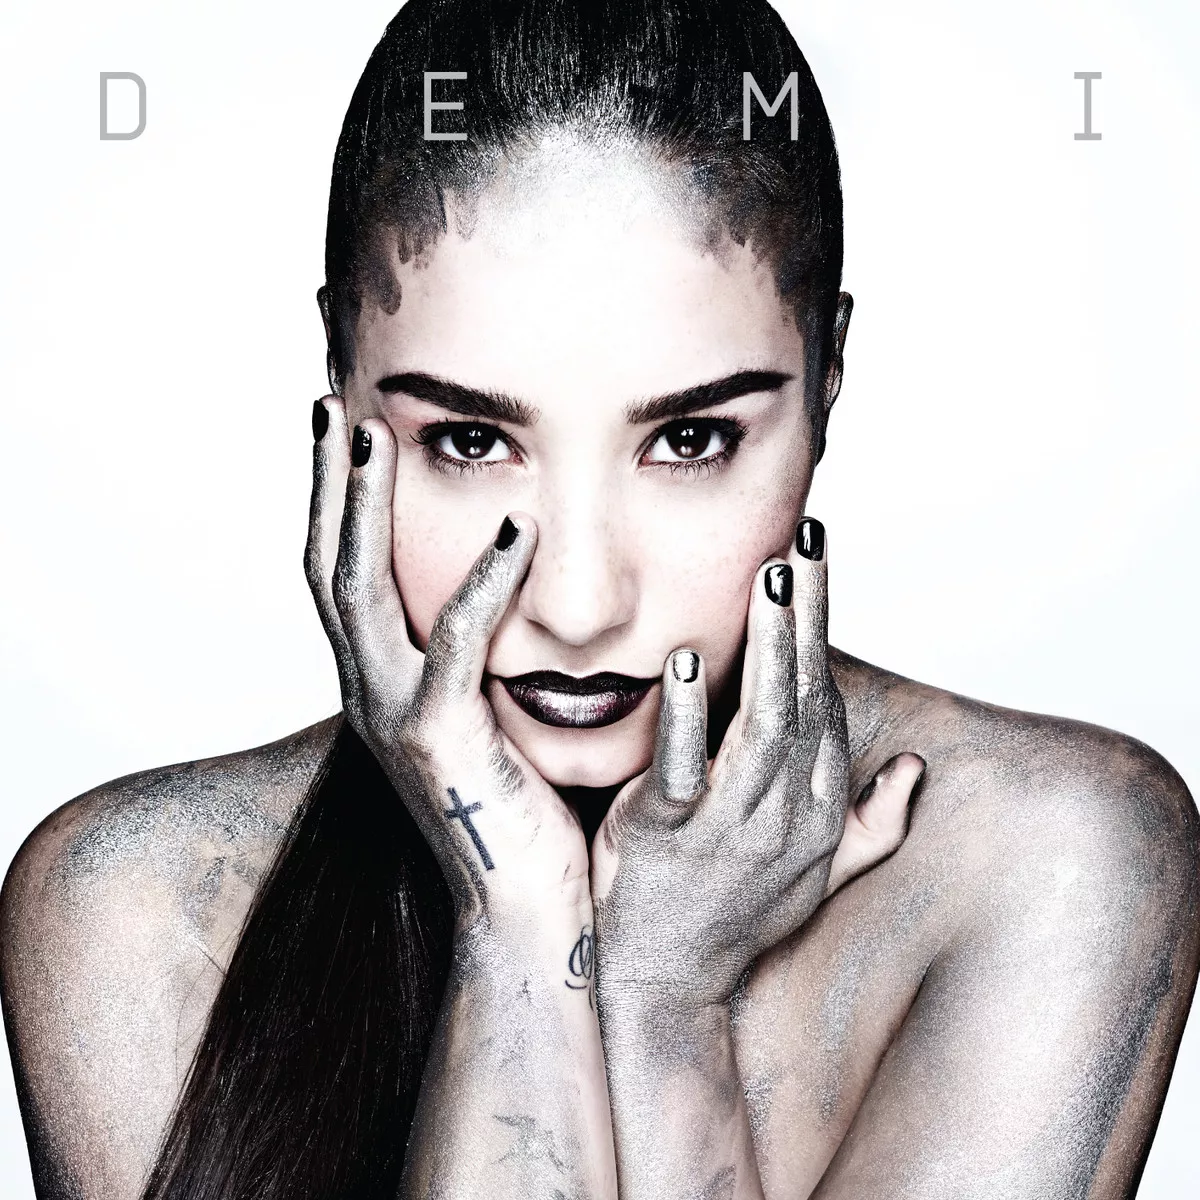 Escucha al completo "Demi" de Demi Lovato AQUÍ